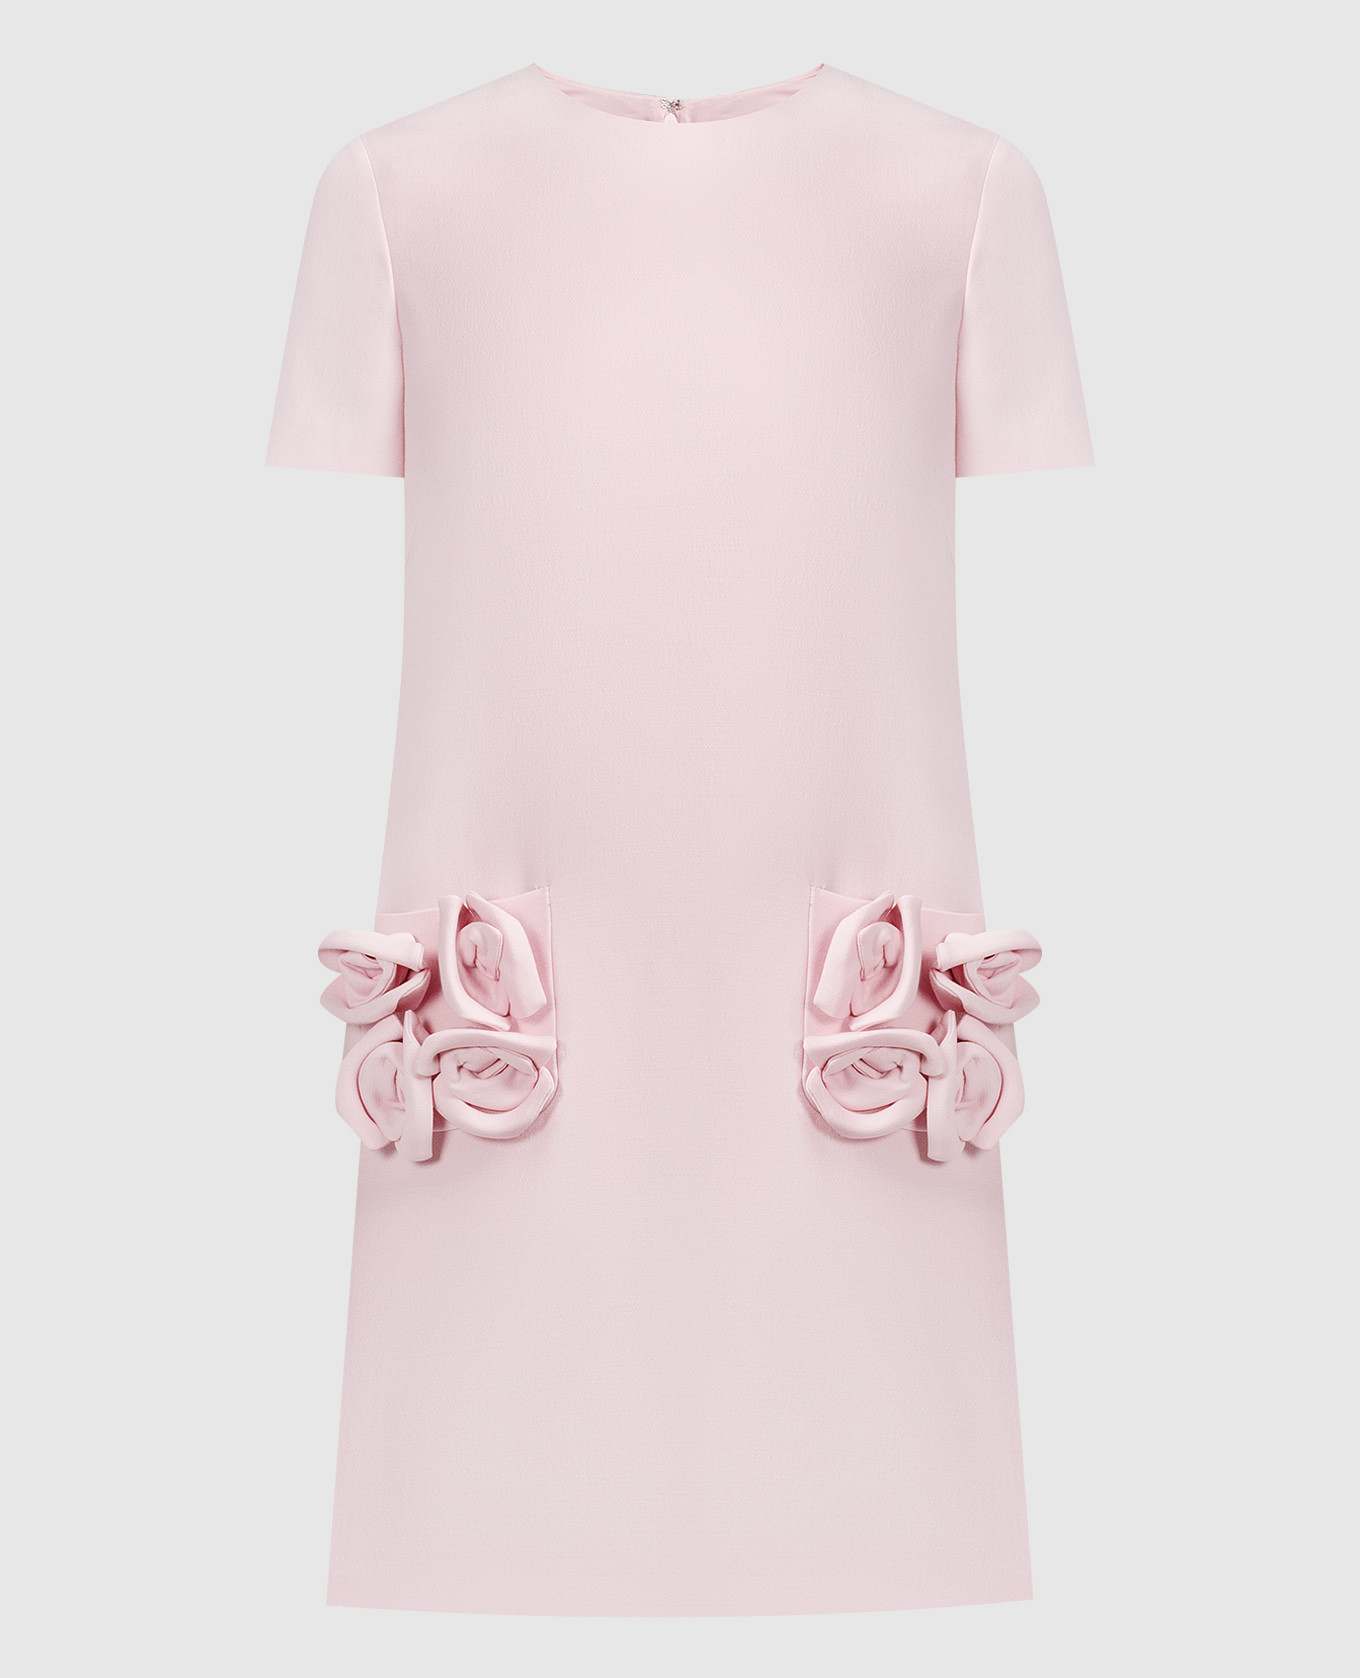 Розовое мини-платье с аппликациями в виде цветов.